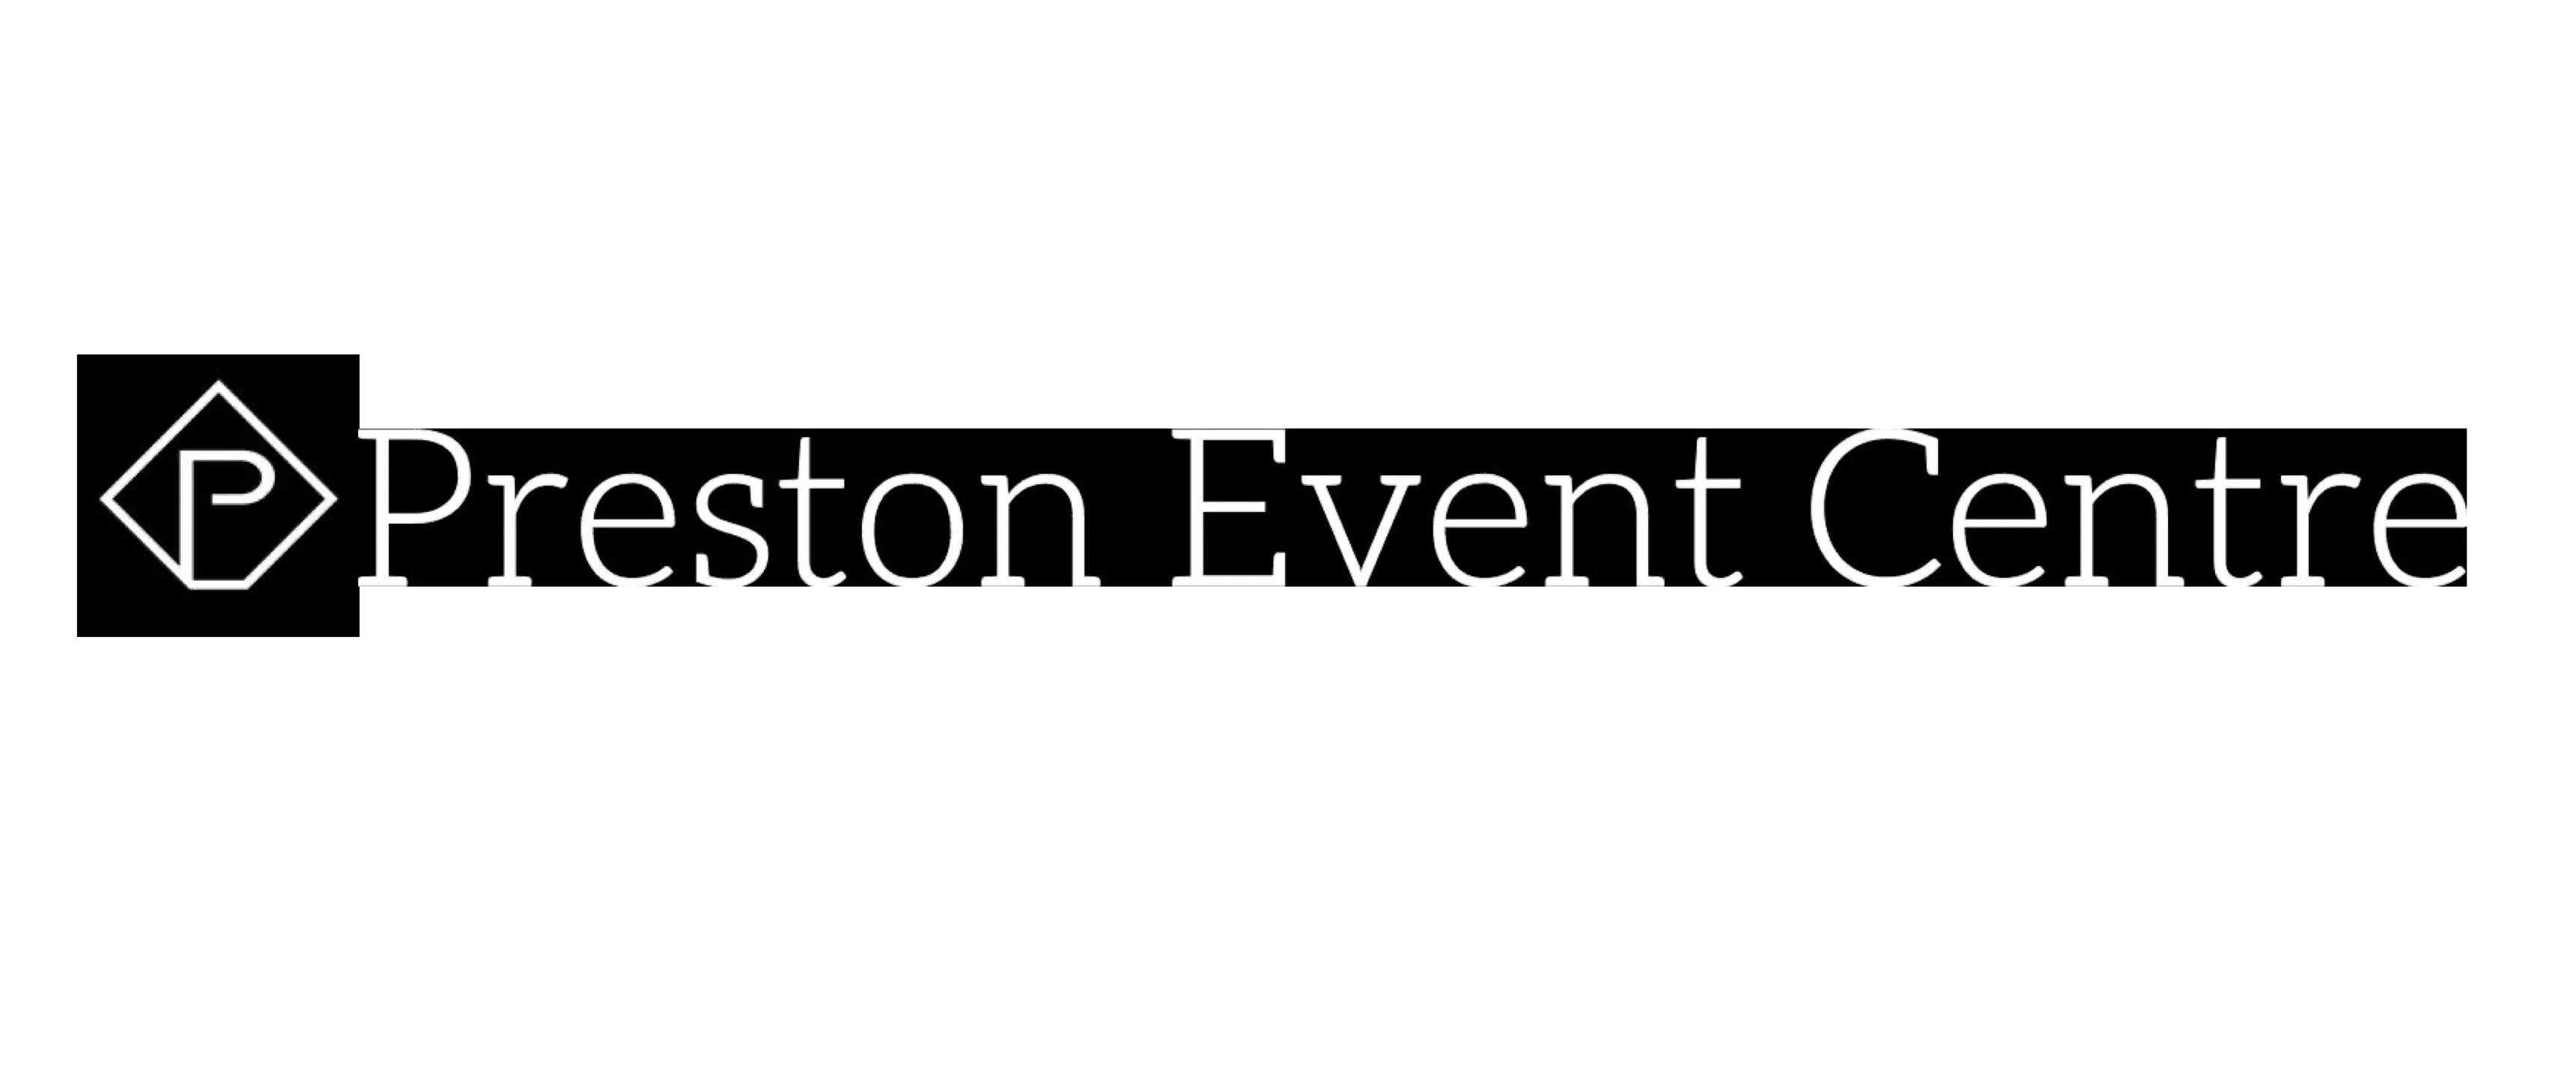 Preston event centre logo